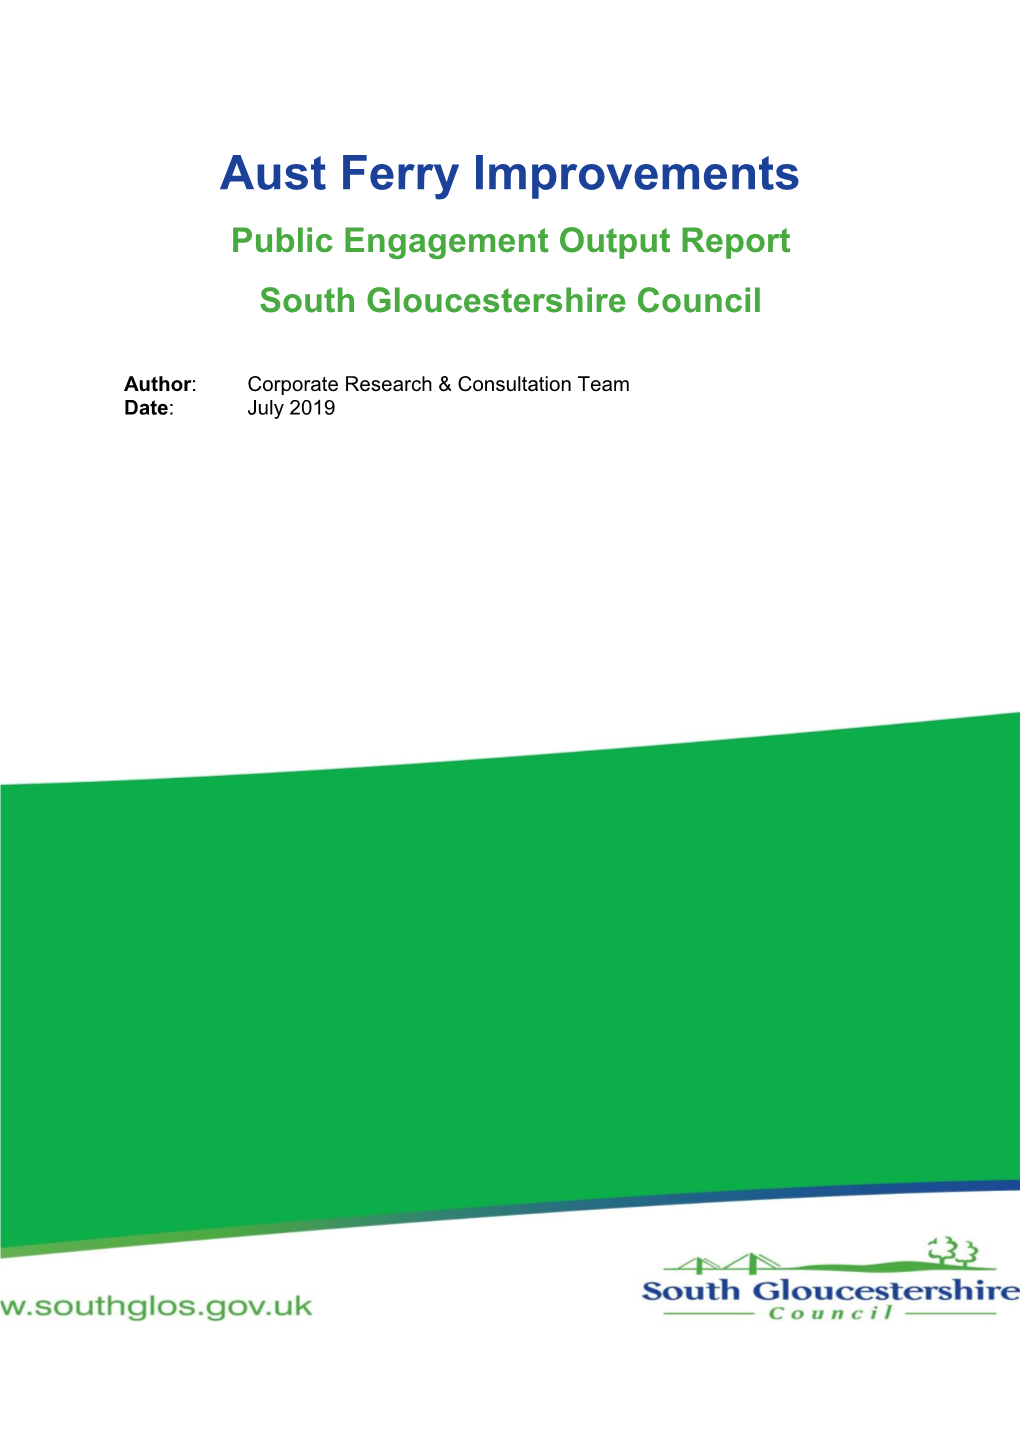 Aust Ferry Improvements Public Engagement Output Report South Gloucestershire Council